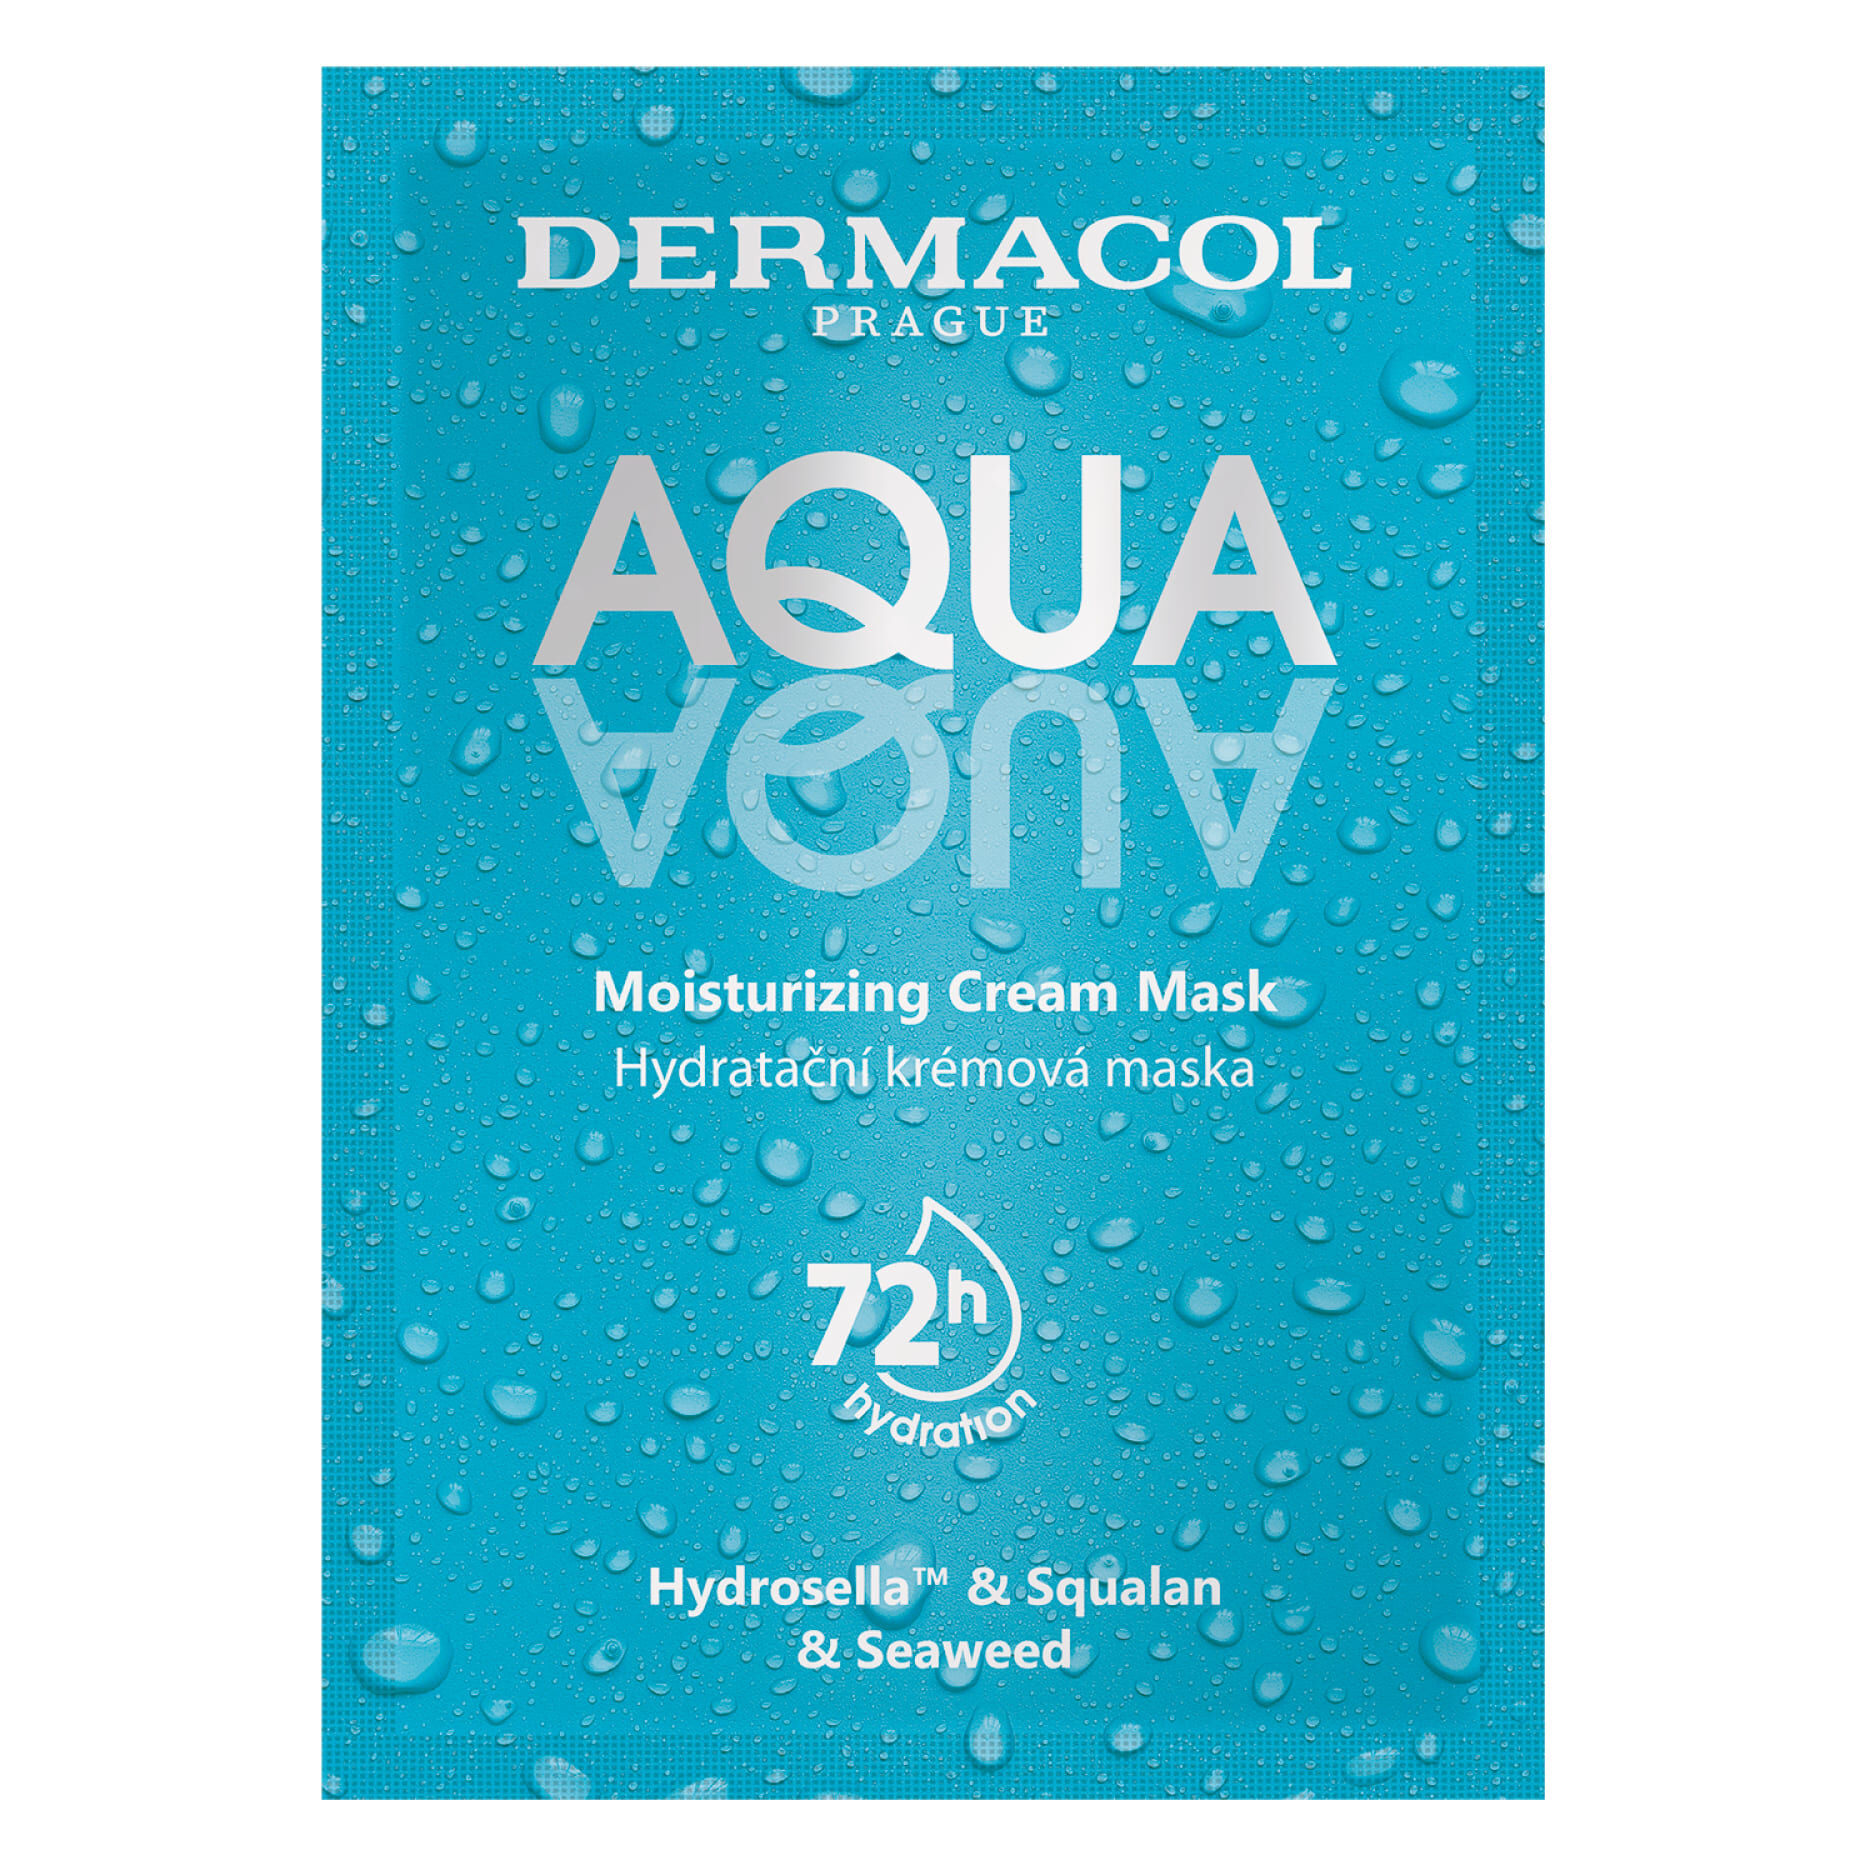 Увлажняющая маска для лица Dermacol Aqua, 2x8 мл маска для лица мануфактура натуральной косметики и мыла живица альгинатная маска для увлажнения кожи увлажняющая